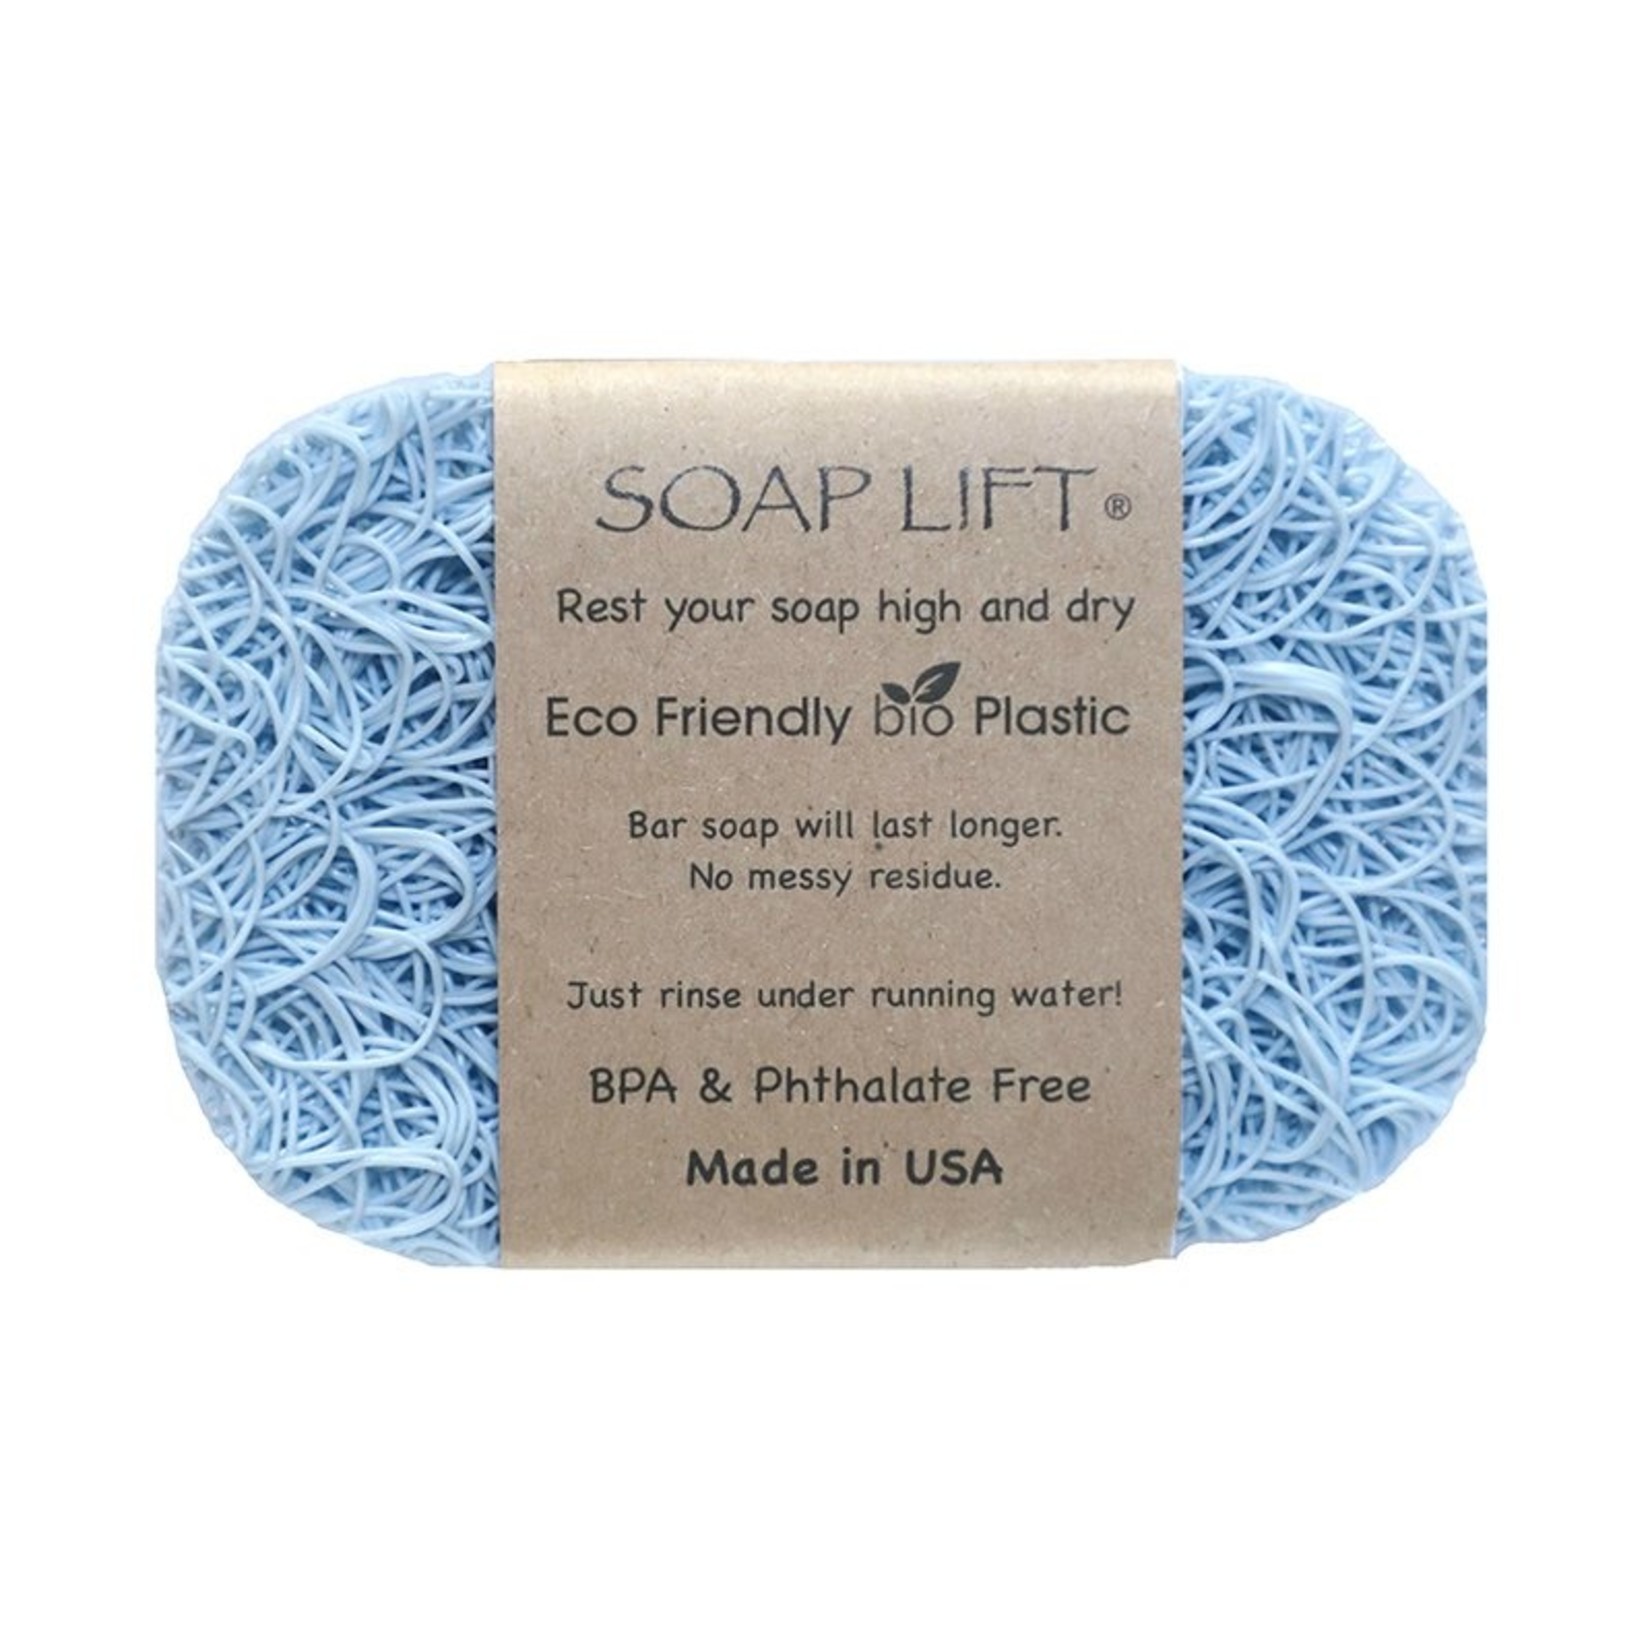 SOAPLIFT SOAP LIFT - Seaside Blue